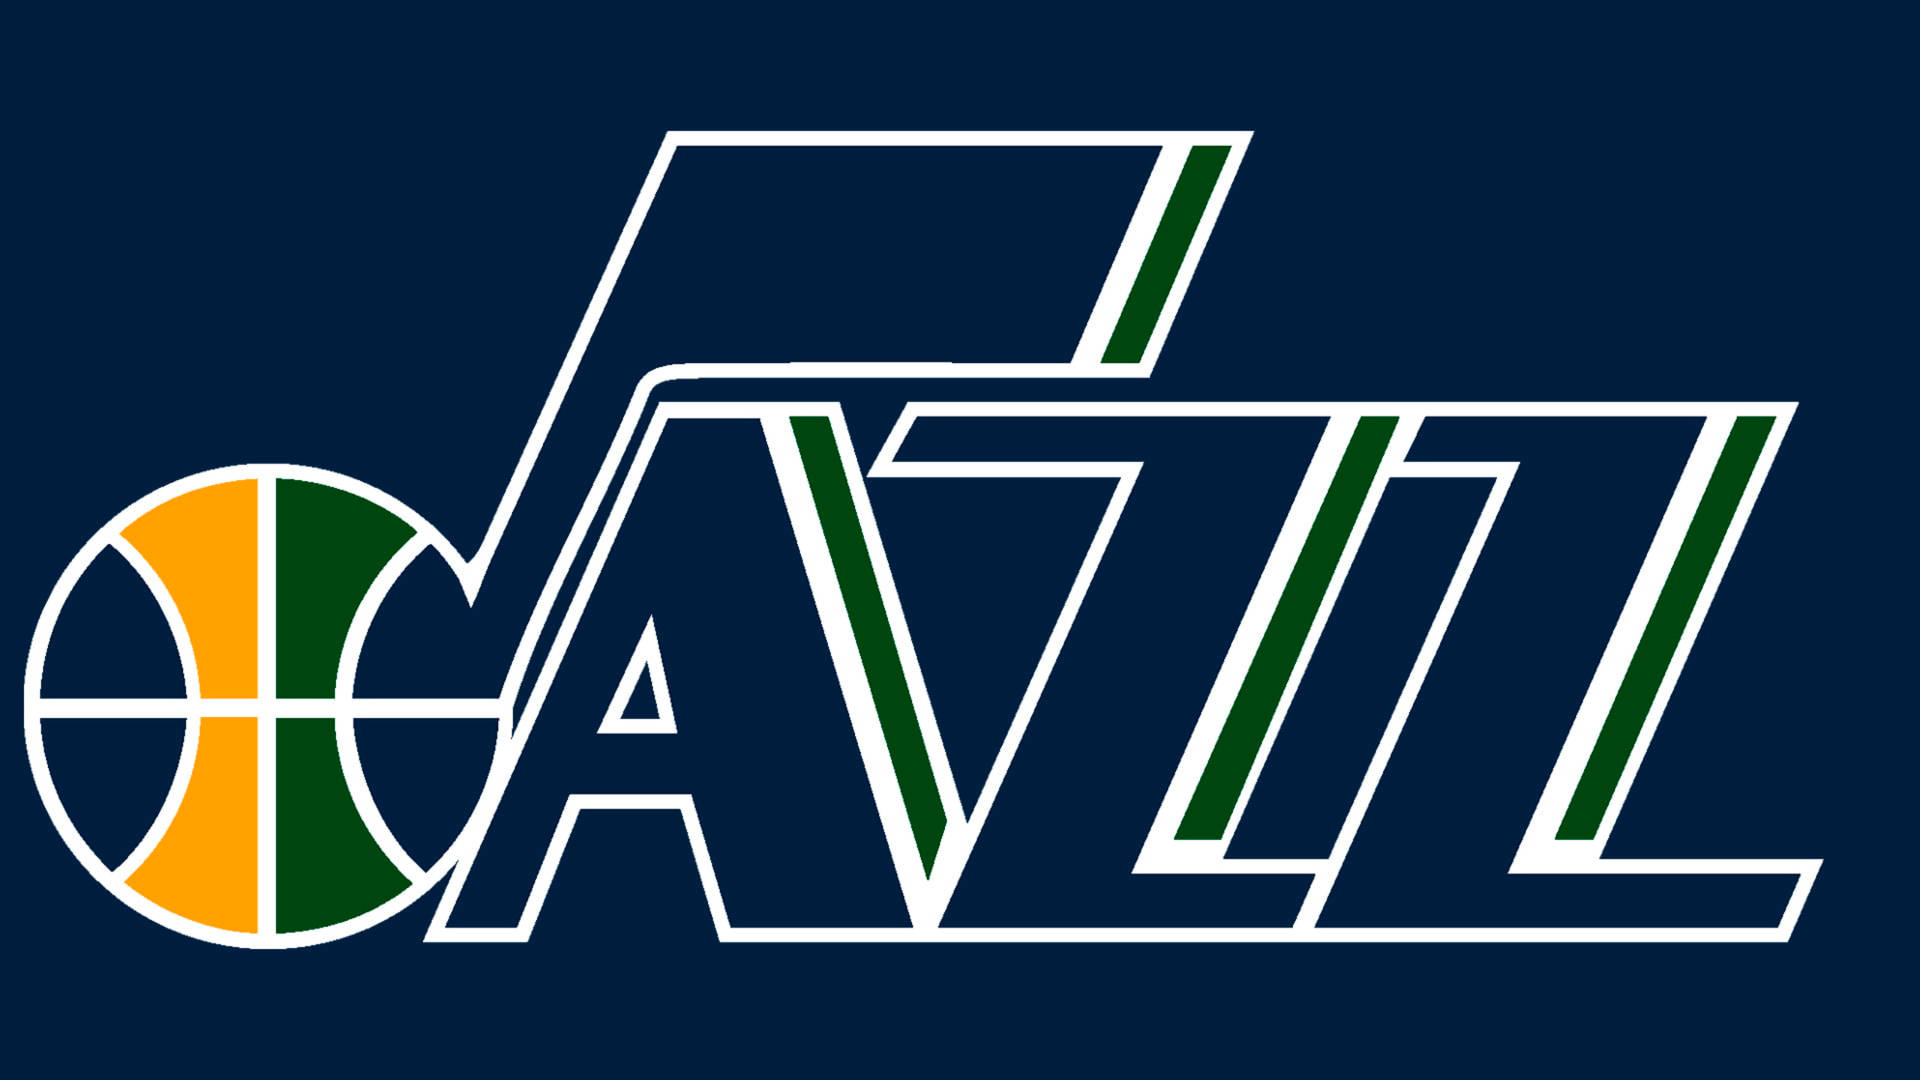 Utah Jazz Name Logo On Blue Background